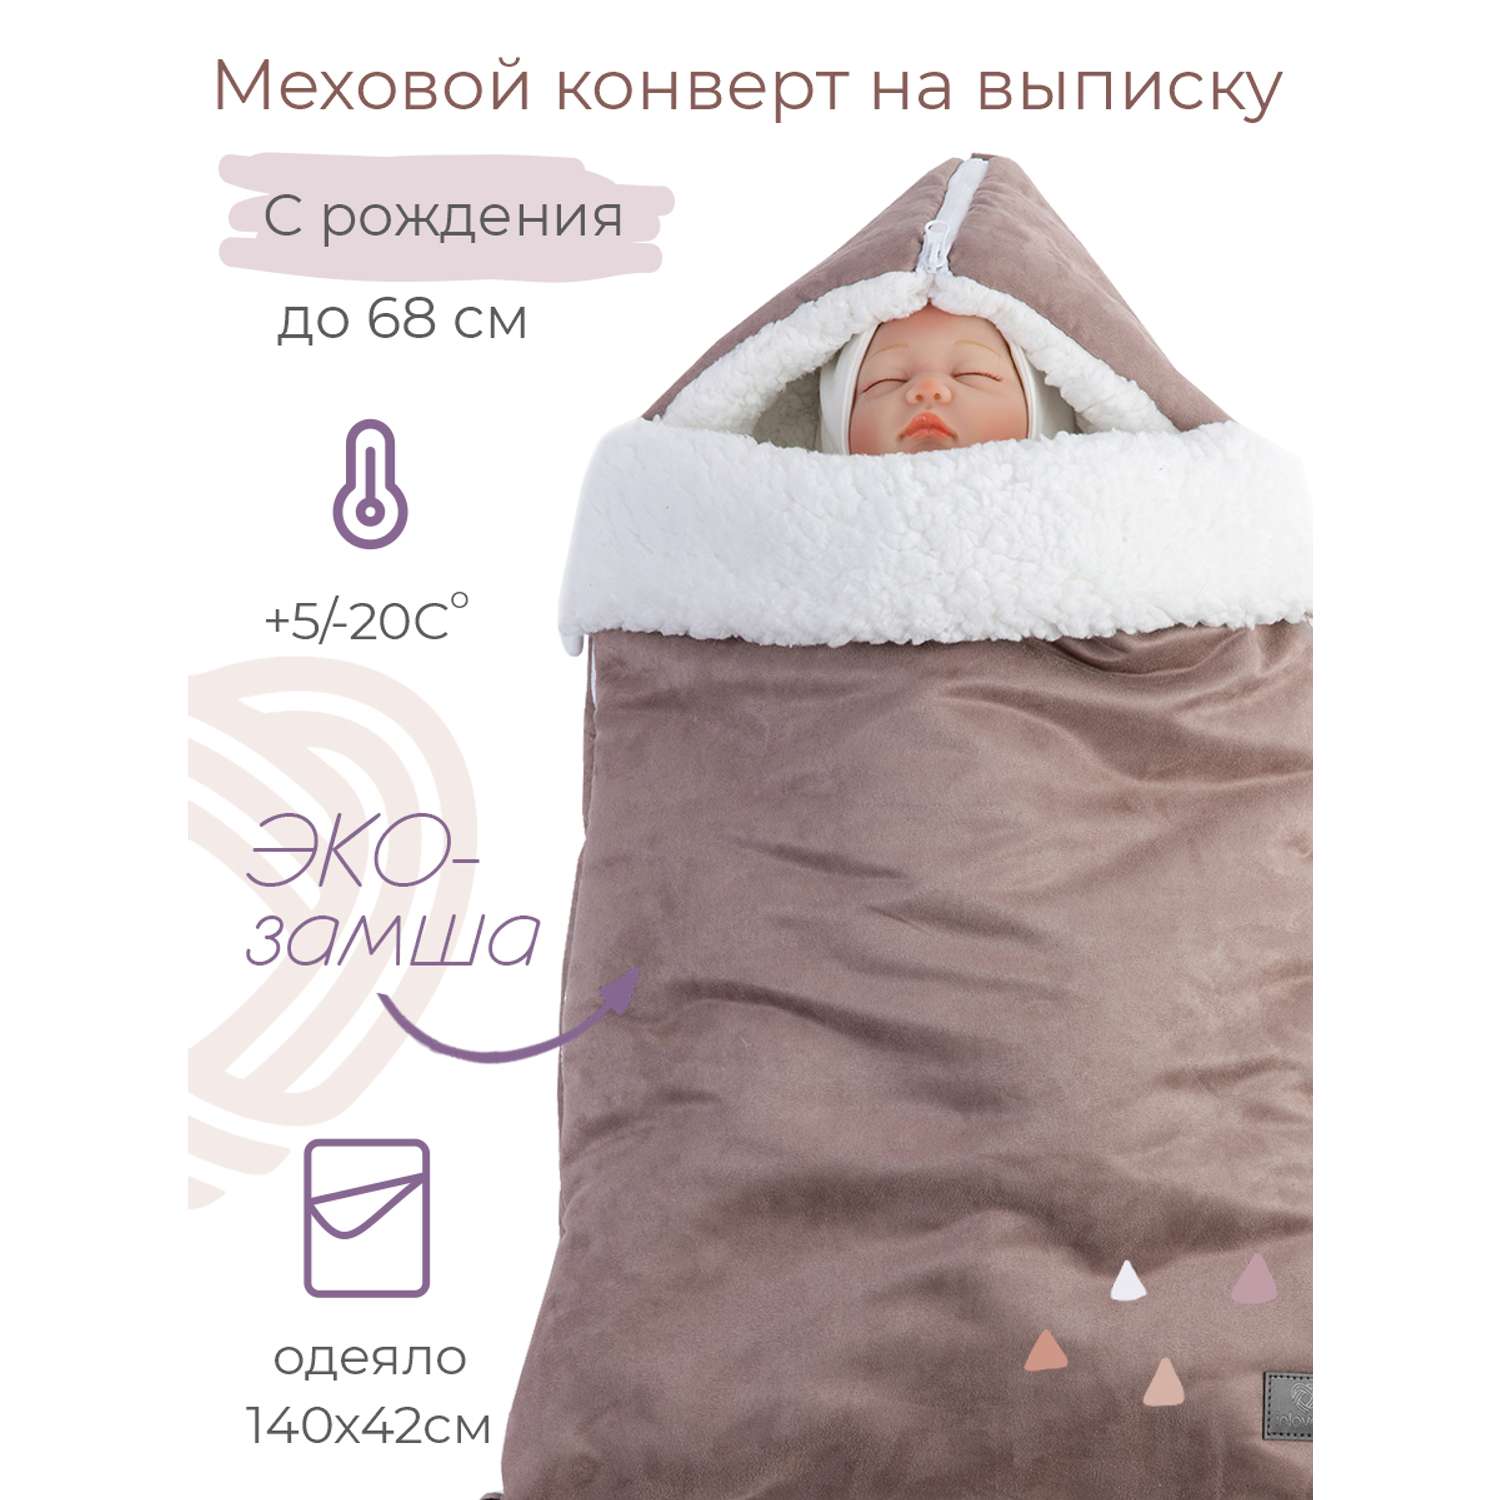 Конверт на выписку inlovery для новорожденного Нордик/капучино - фото 1